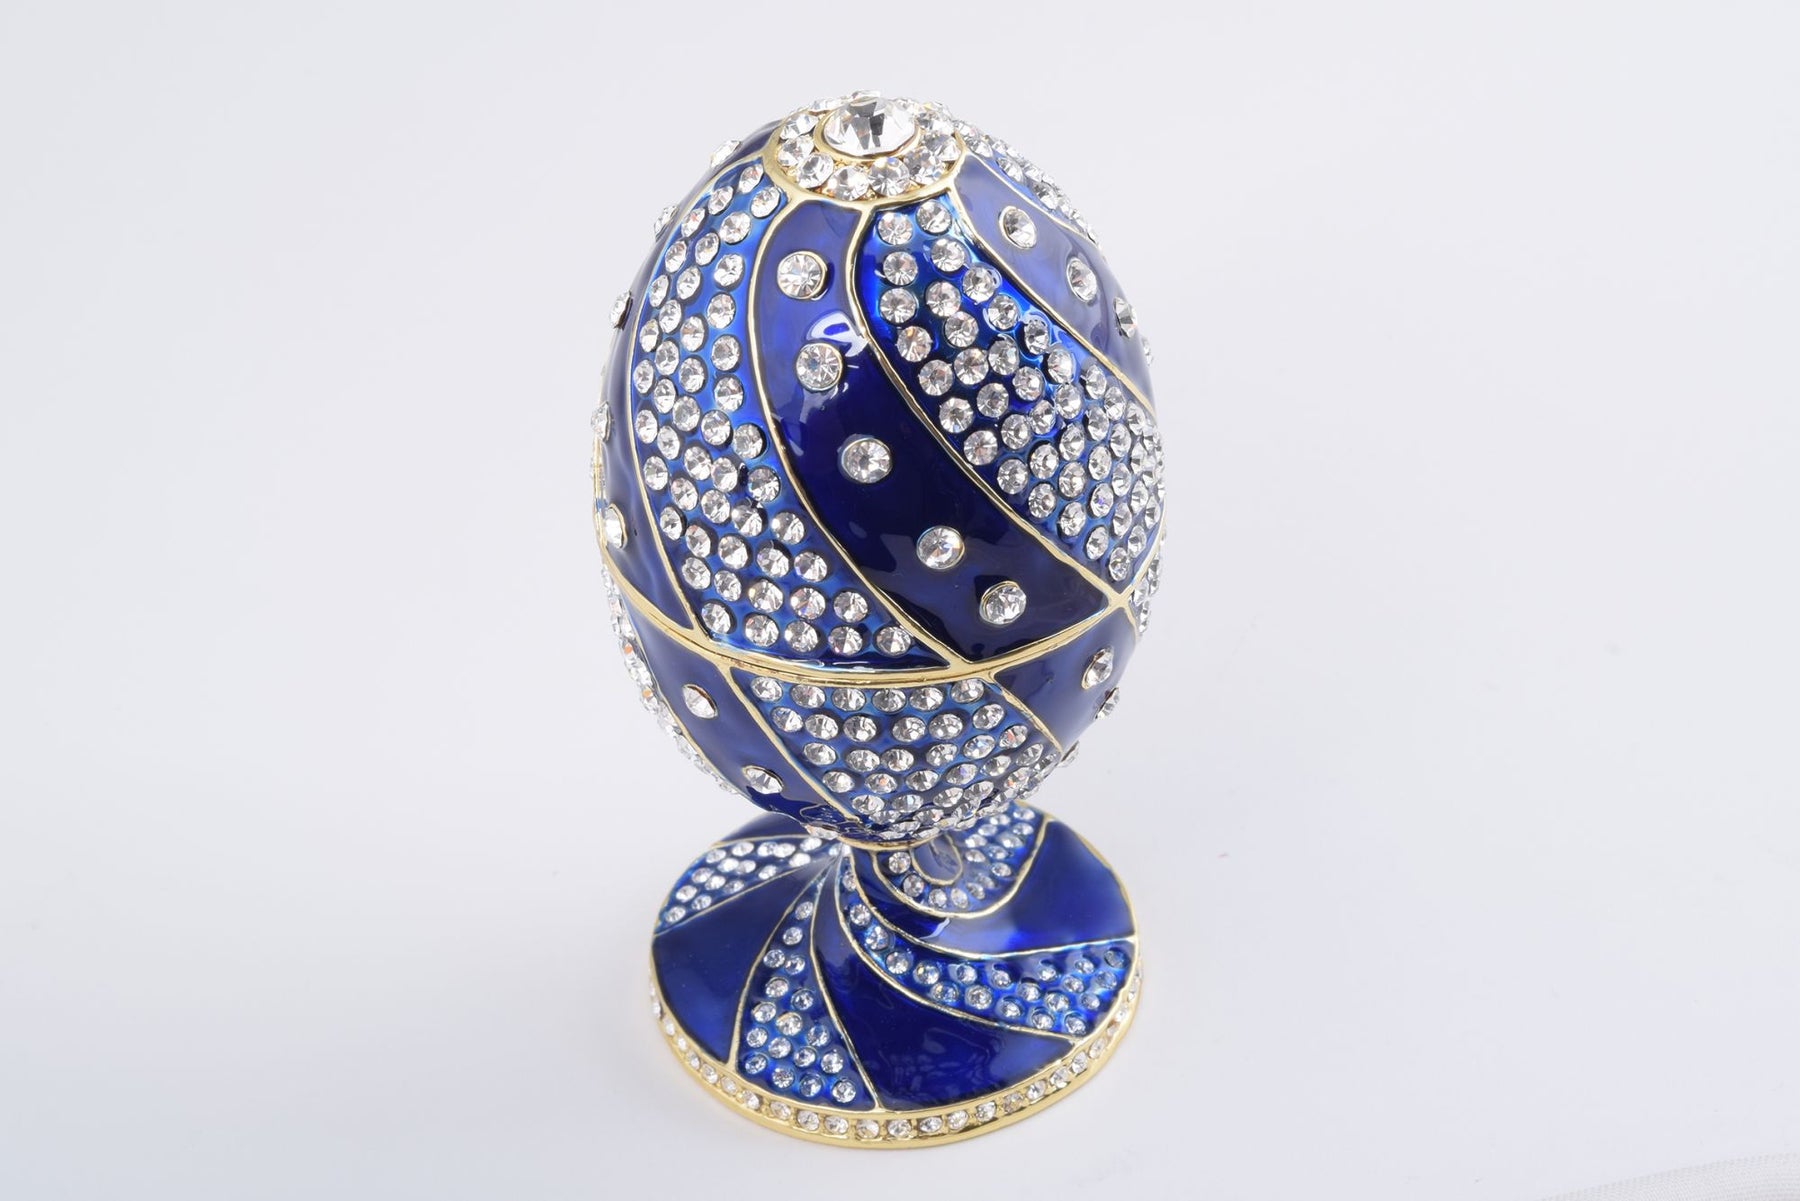 Blaues Fabergé-Ei mit Kristallen